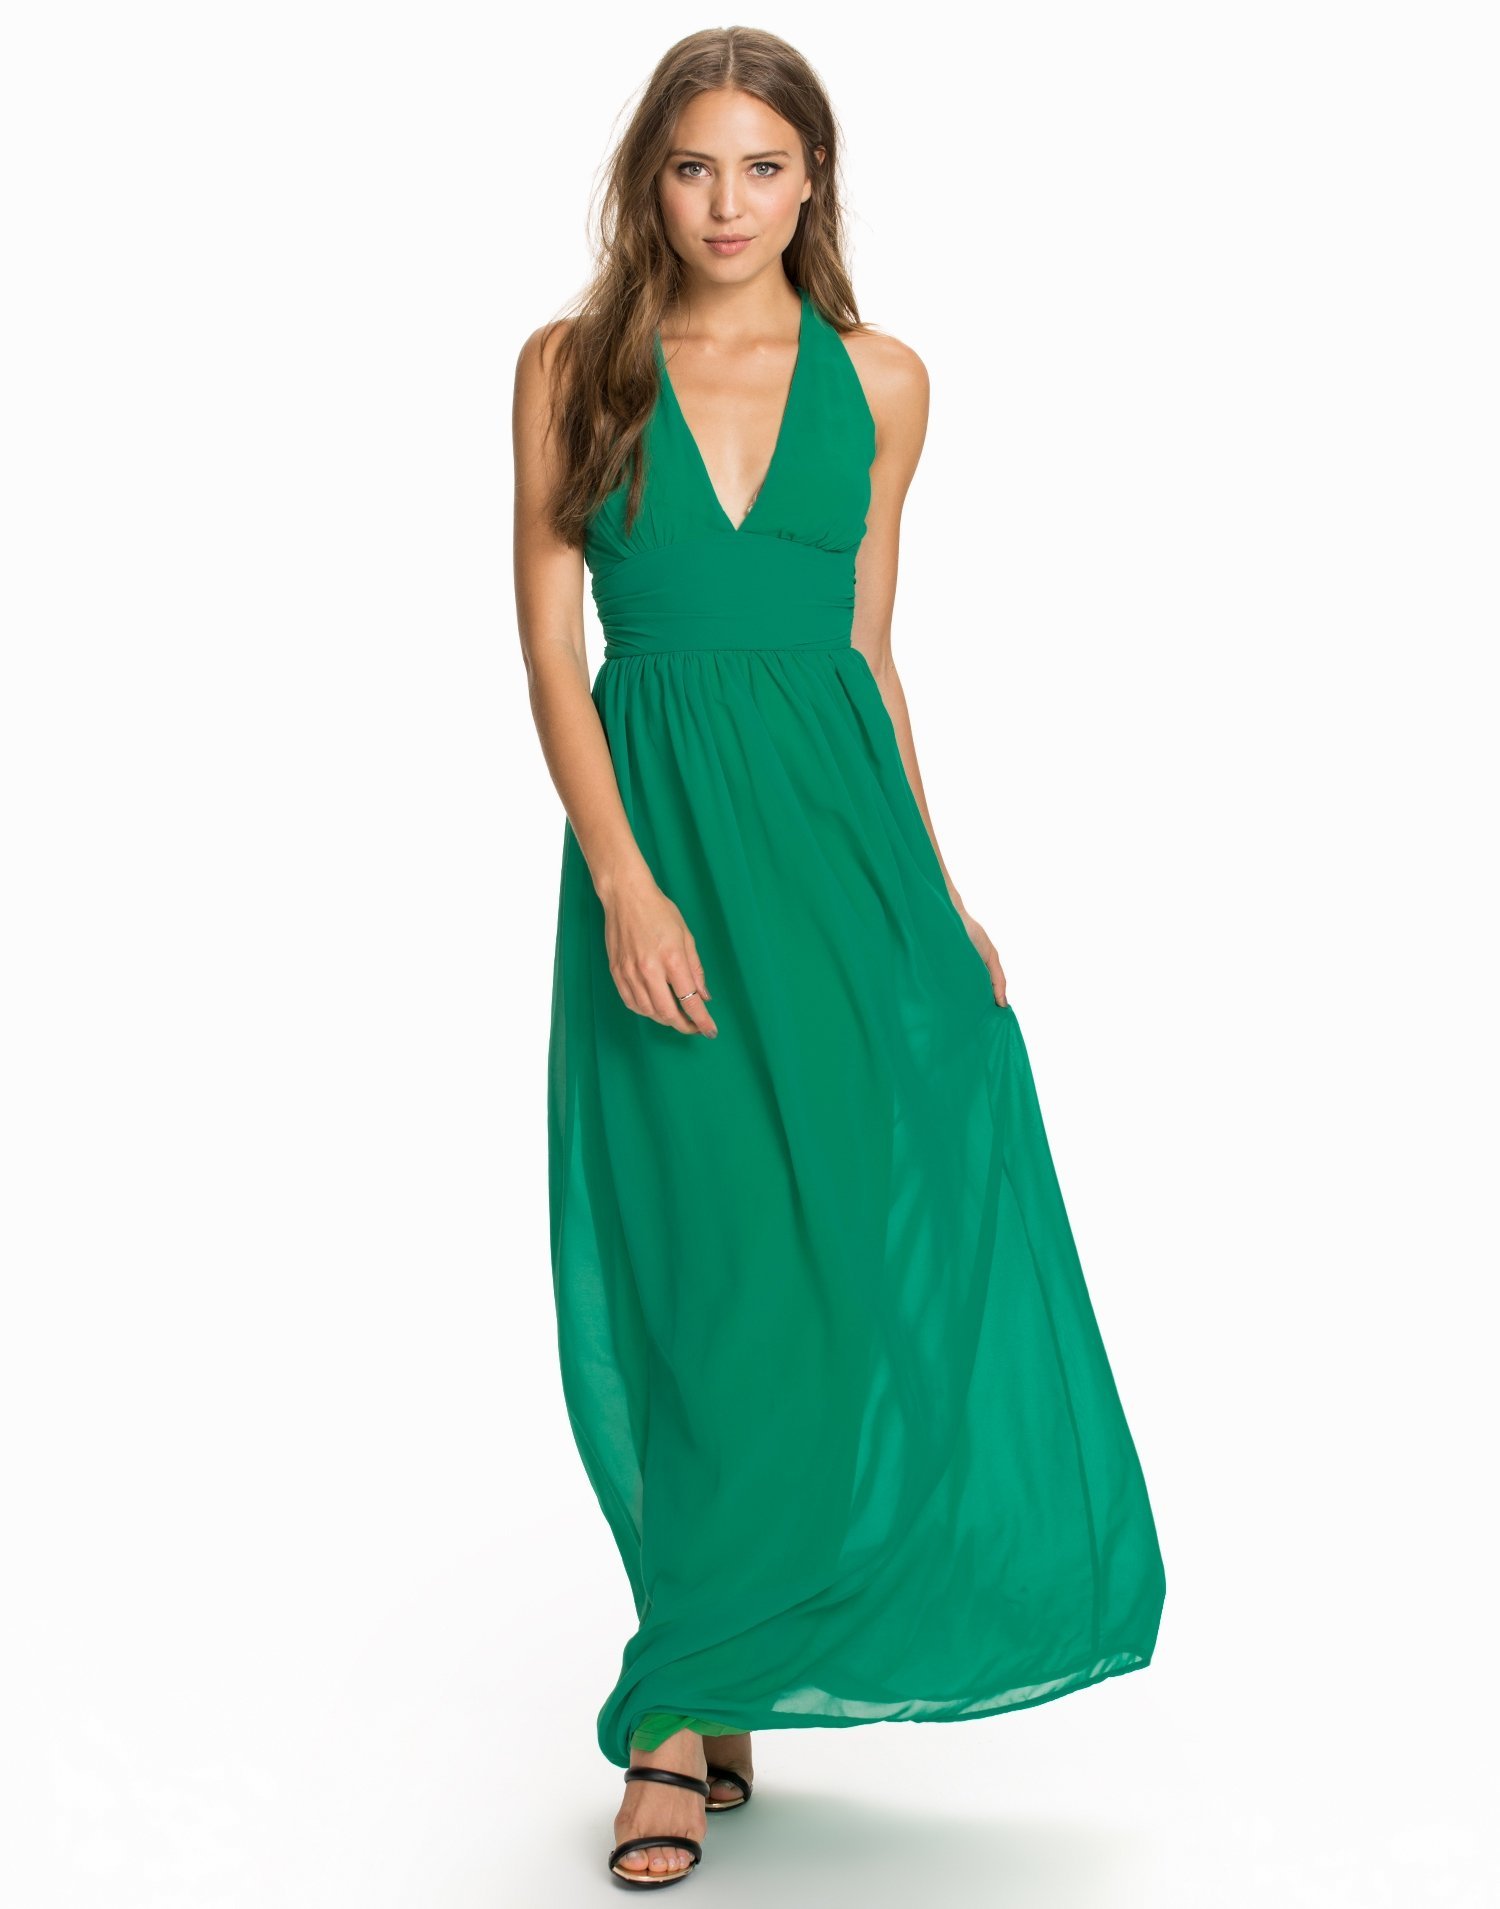 Criss Cross Chiffon Maxi Dress - Club L - Mint Green - Party Dresses ...